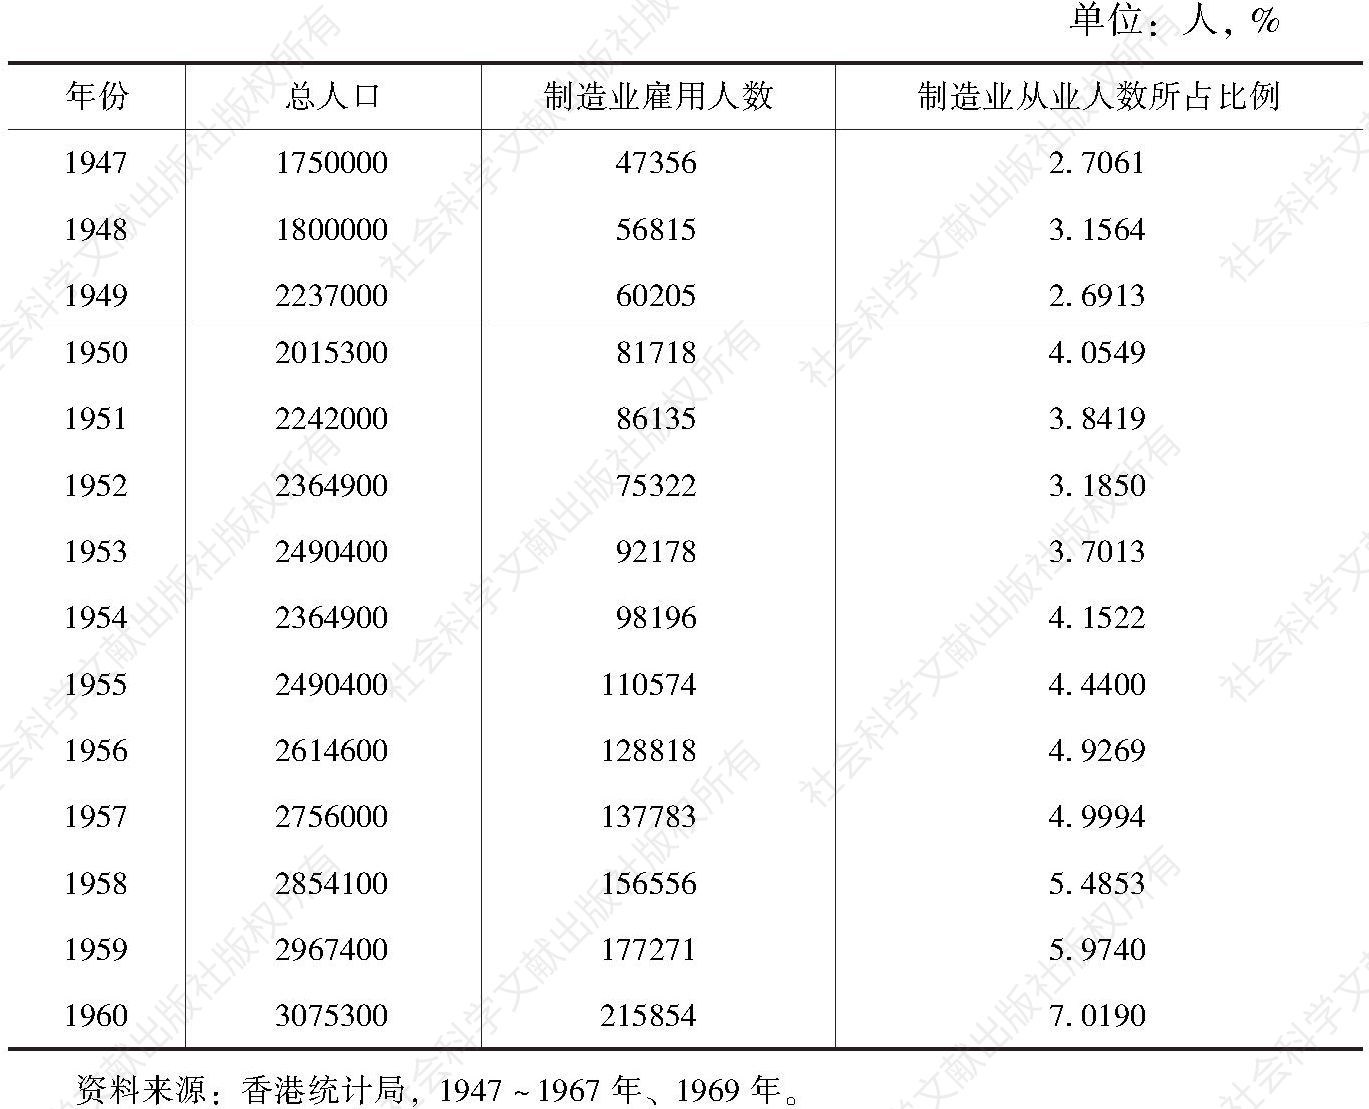 表1-2 1947～1960年香港总人口、制造业雇用人数及占比变化情况